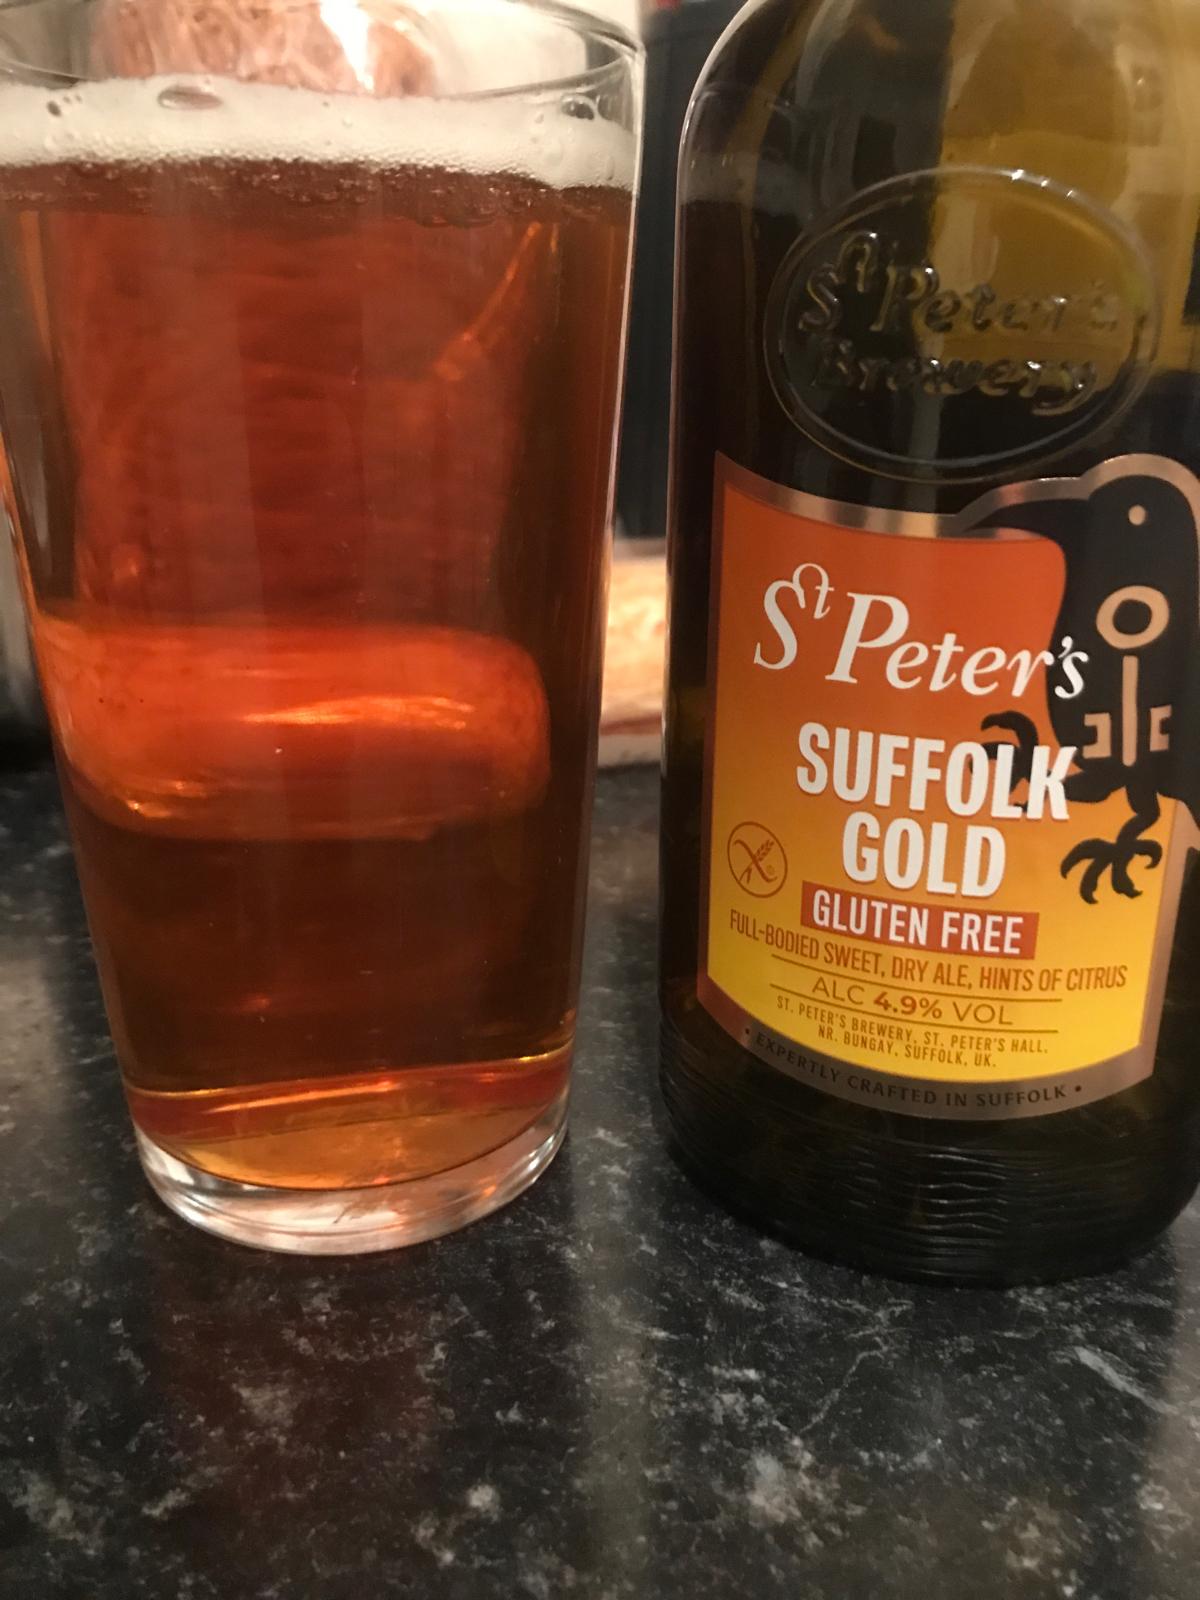 Suffolk Gold Gluten Free